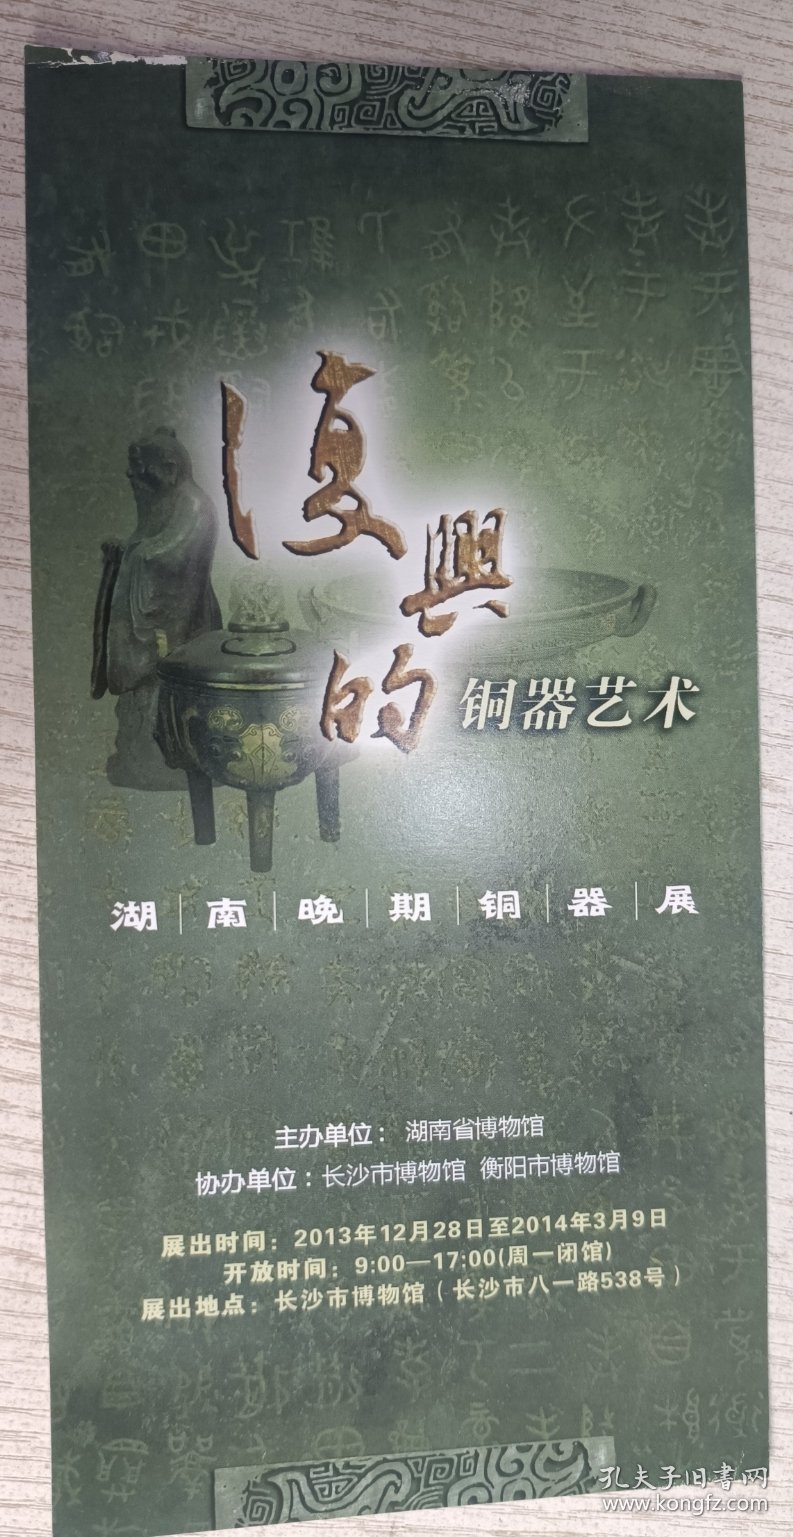 湖南晚期铜器展(2013年)